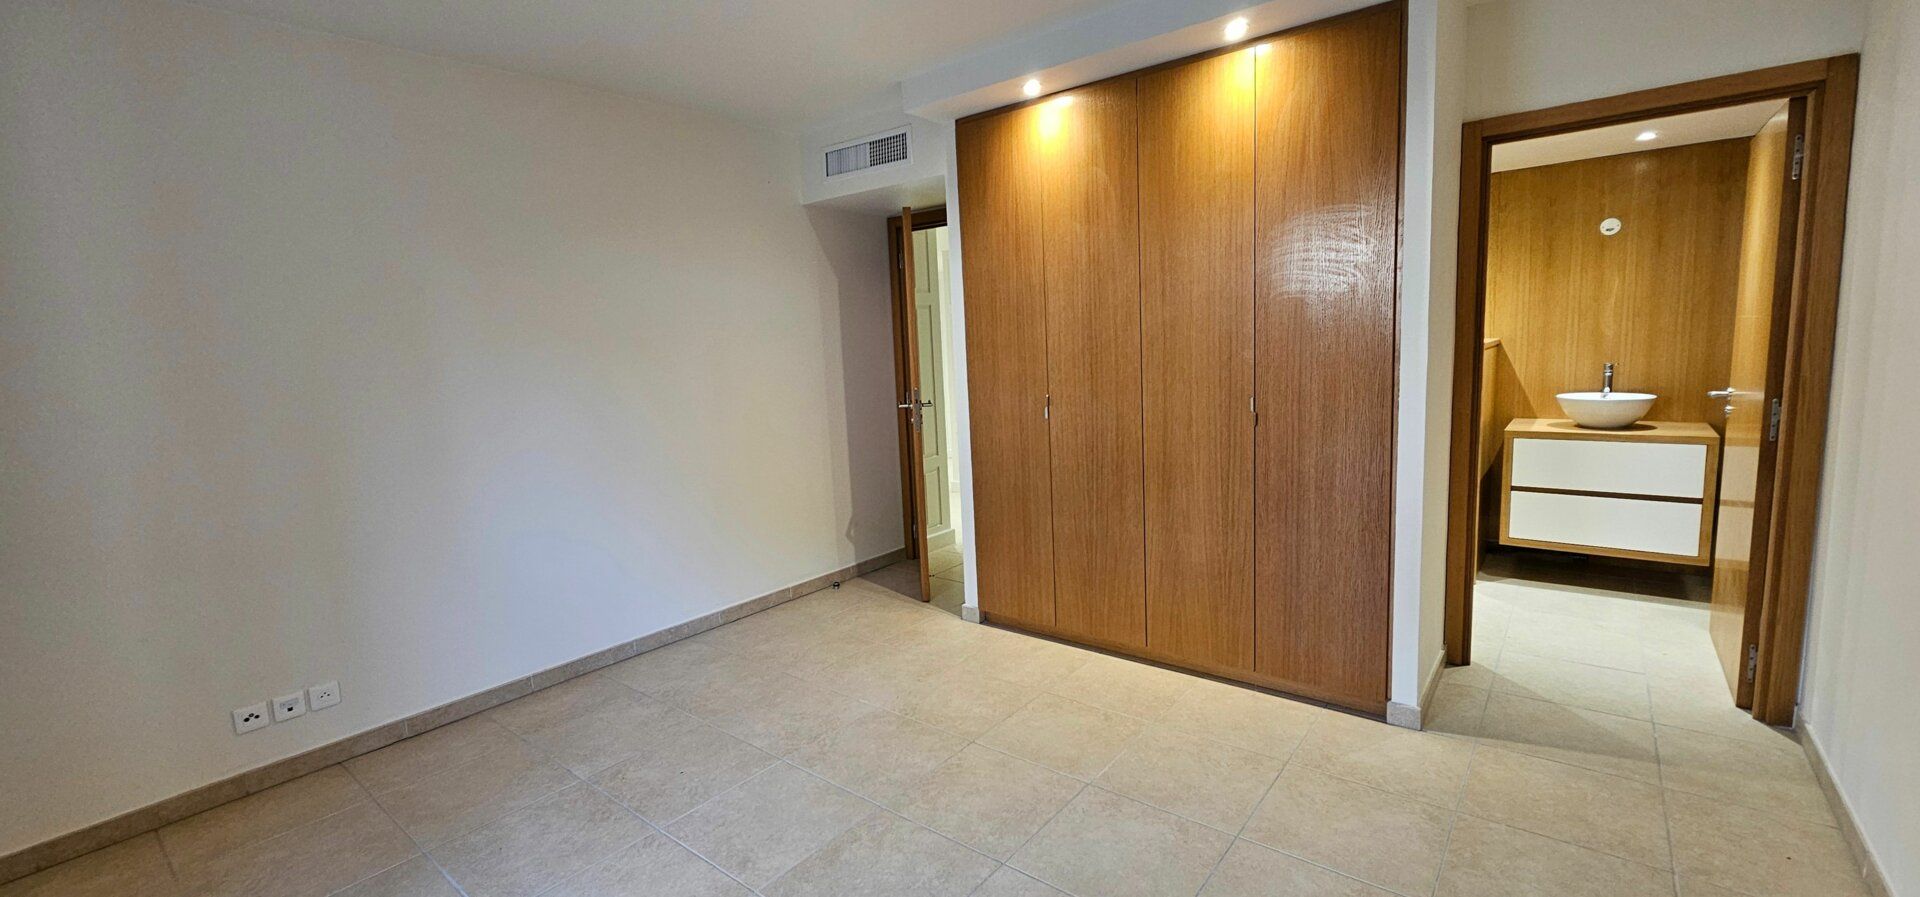 Appartement à vendre 3 152m2 à Saint-Raphaël vignette-10